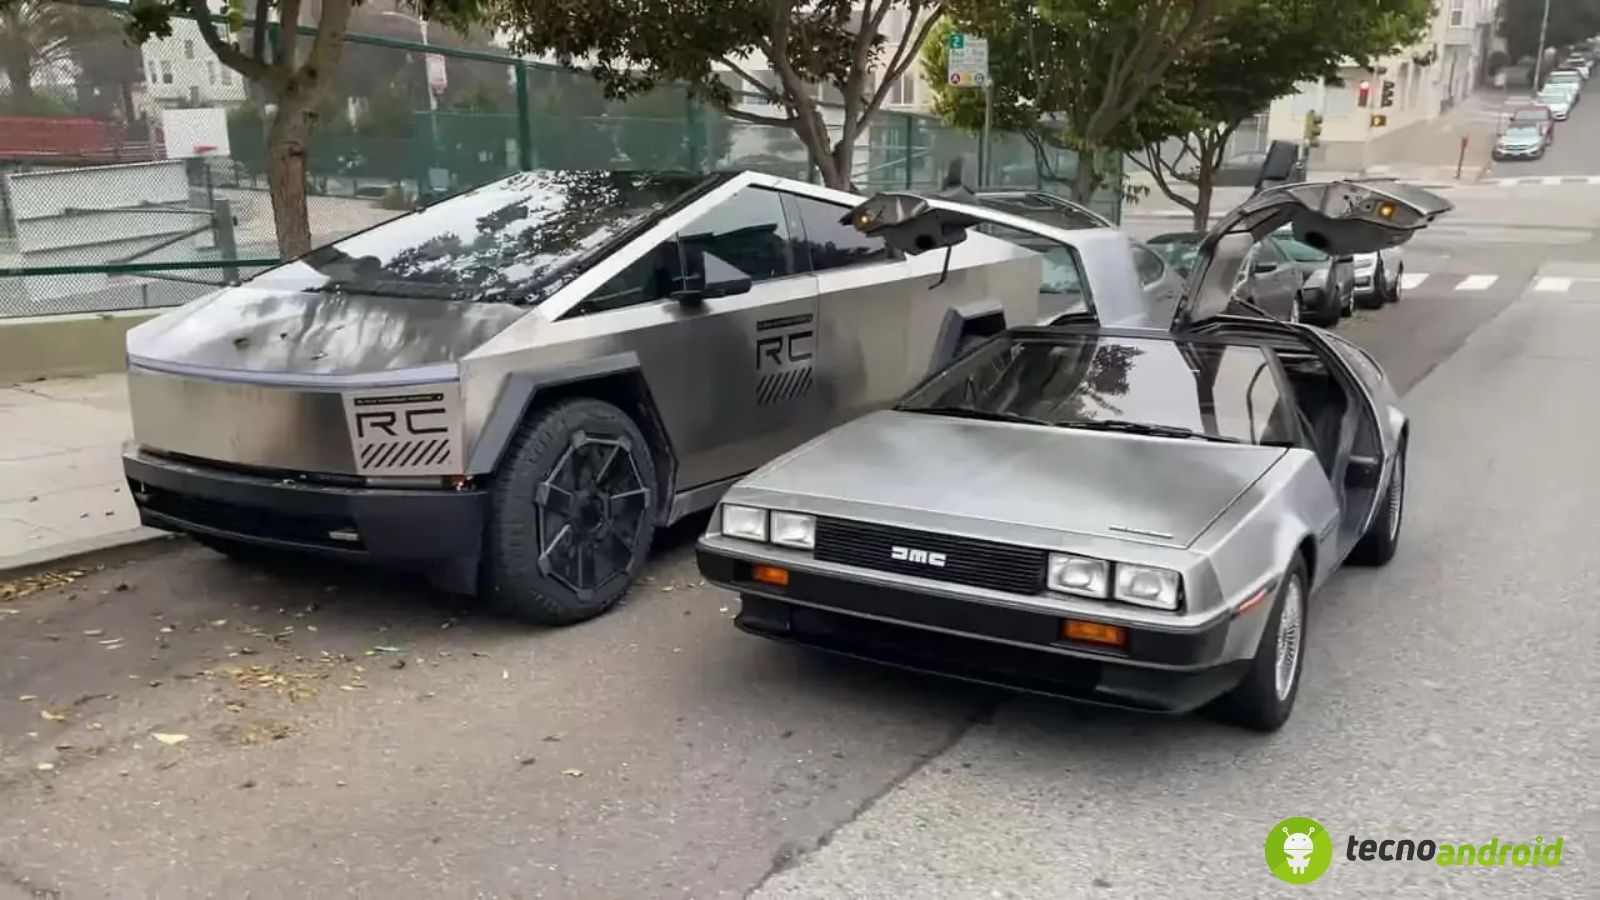 DeLorean e Cybertruck tesla a confronto.